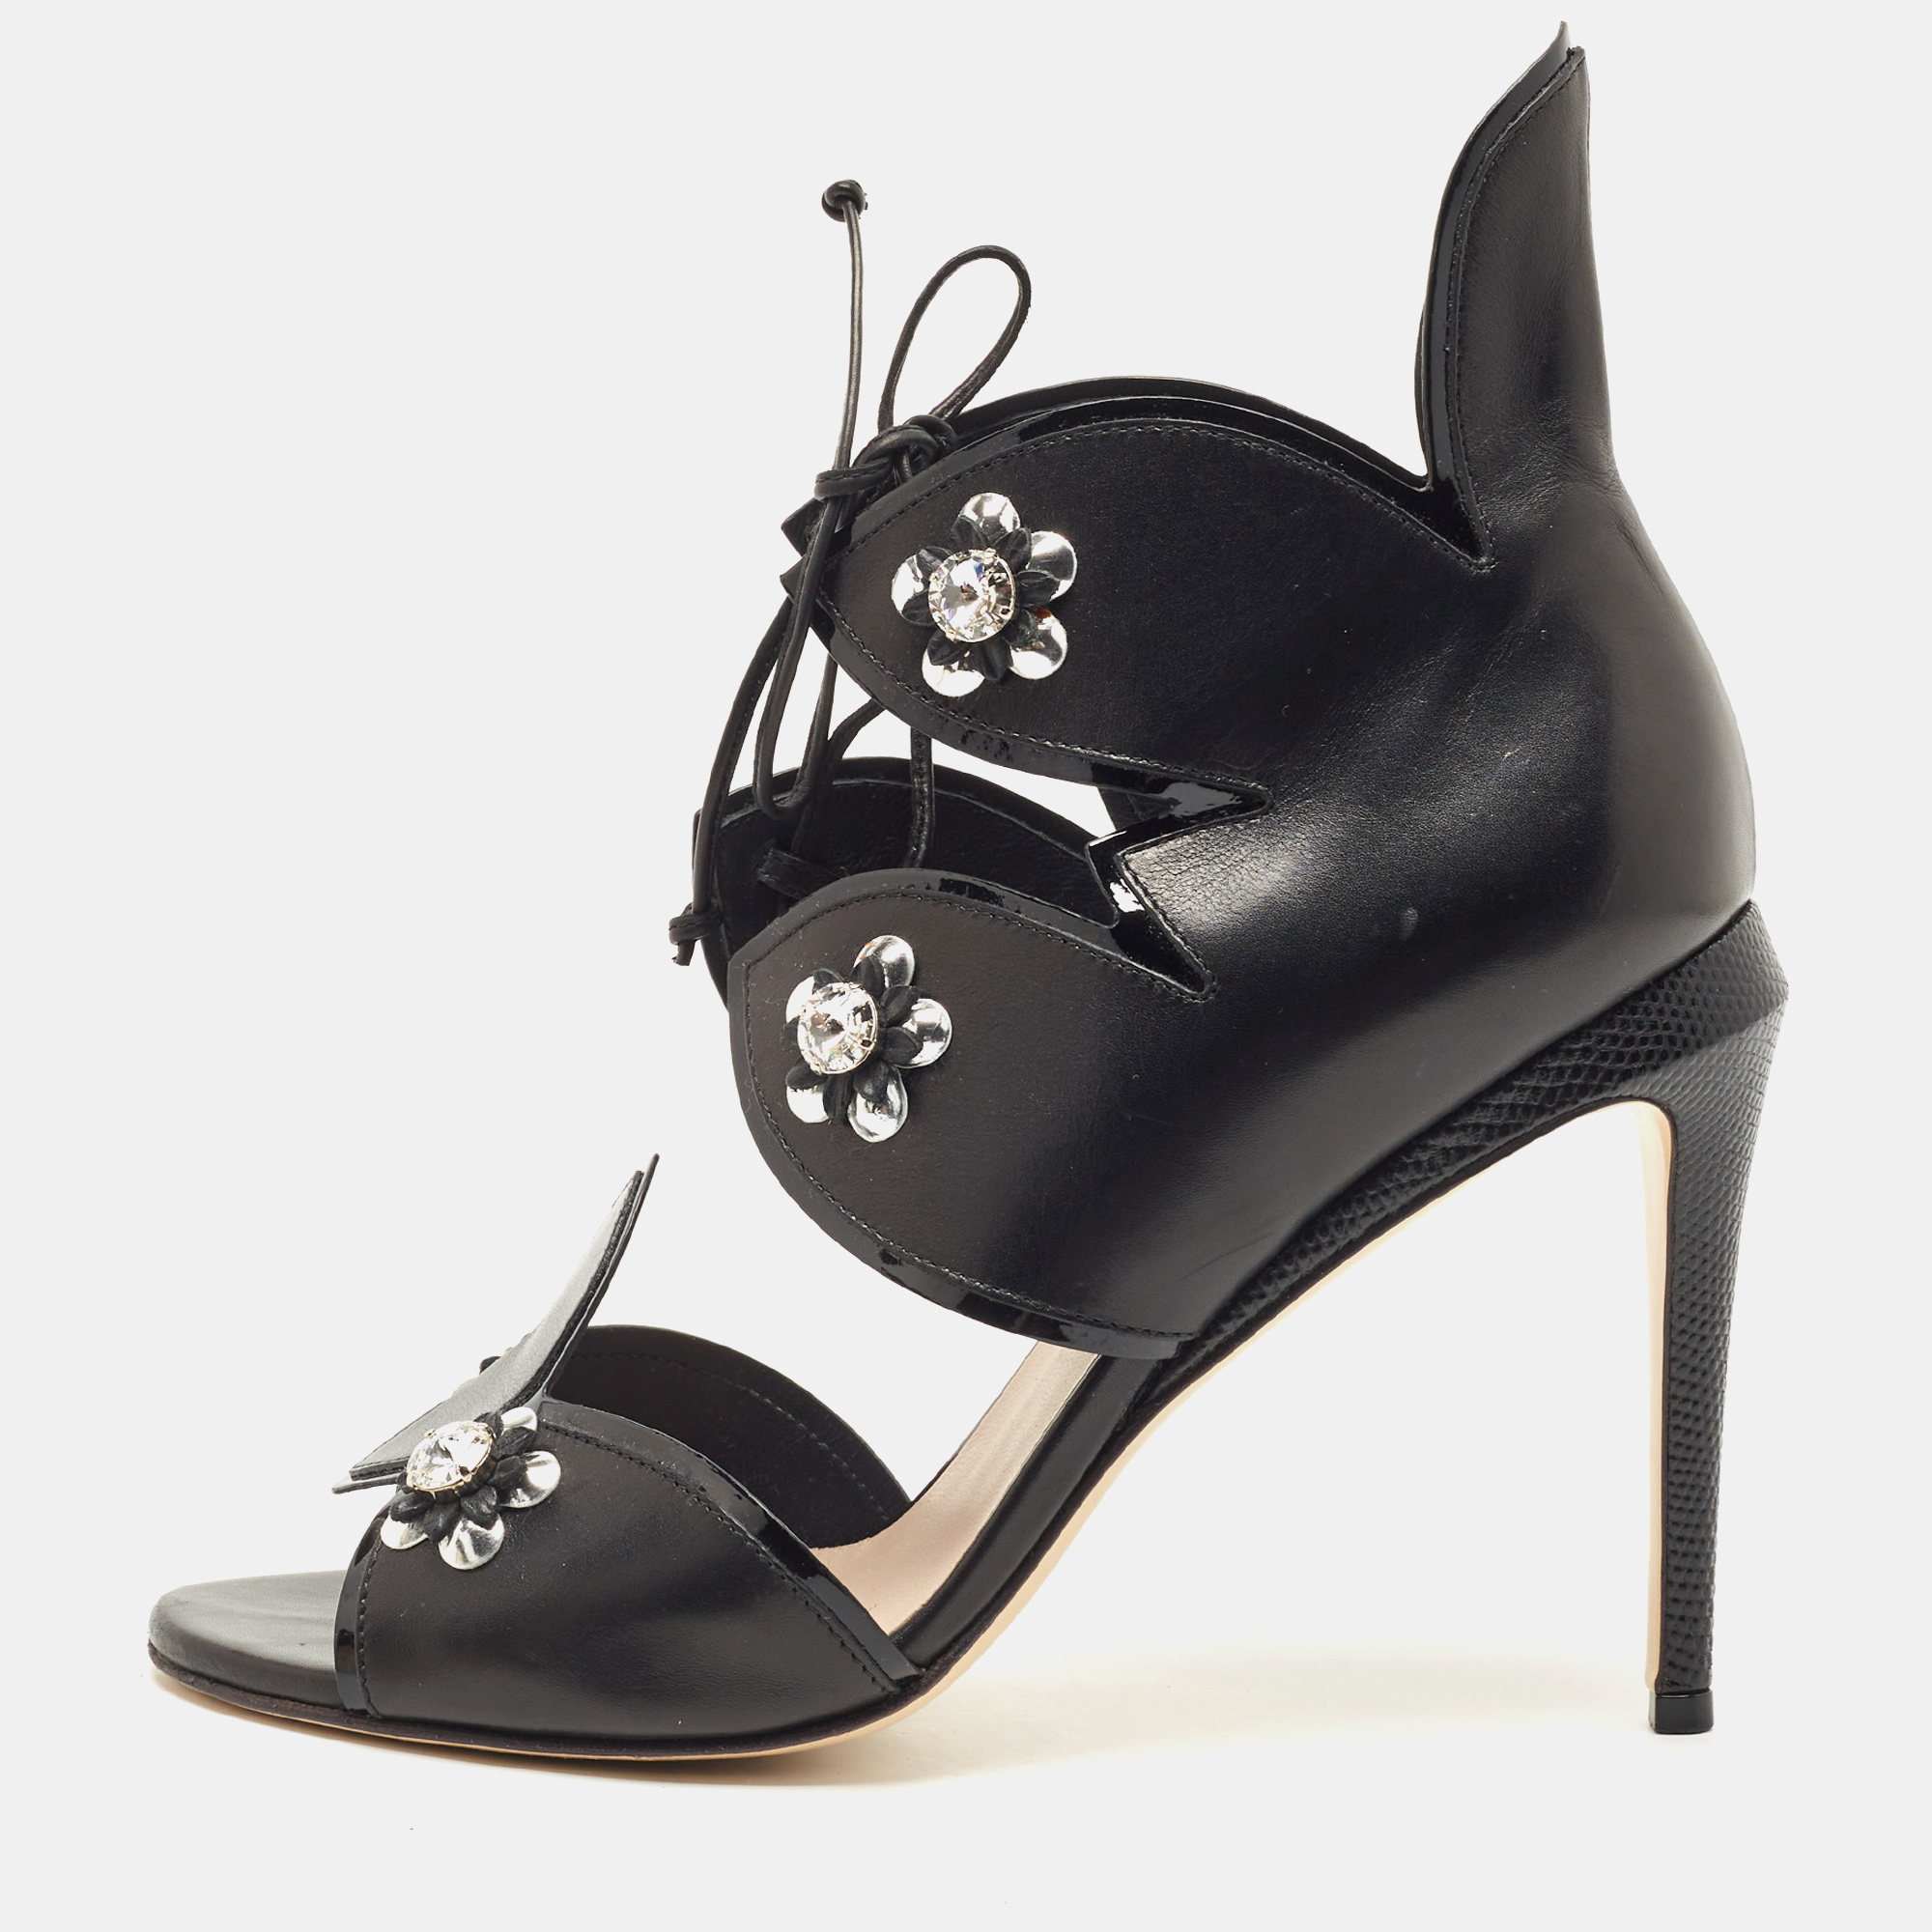 Pre-owned Fendi Black Leather Flowerland Embellished Sandals Size 39